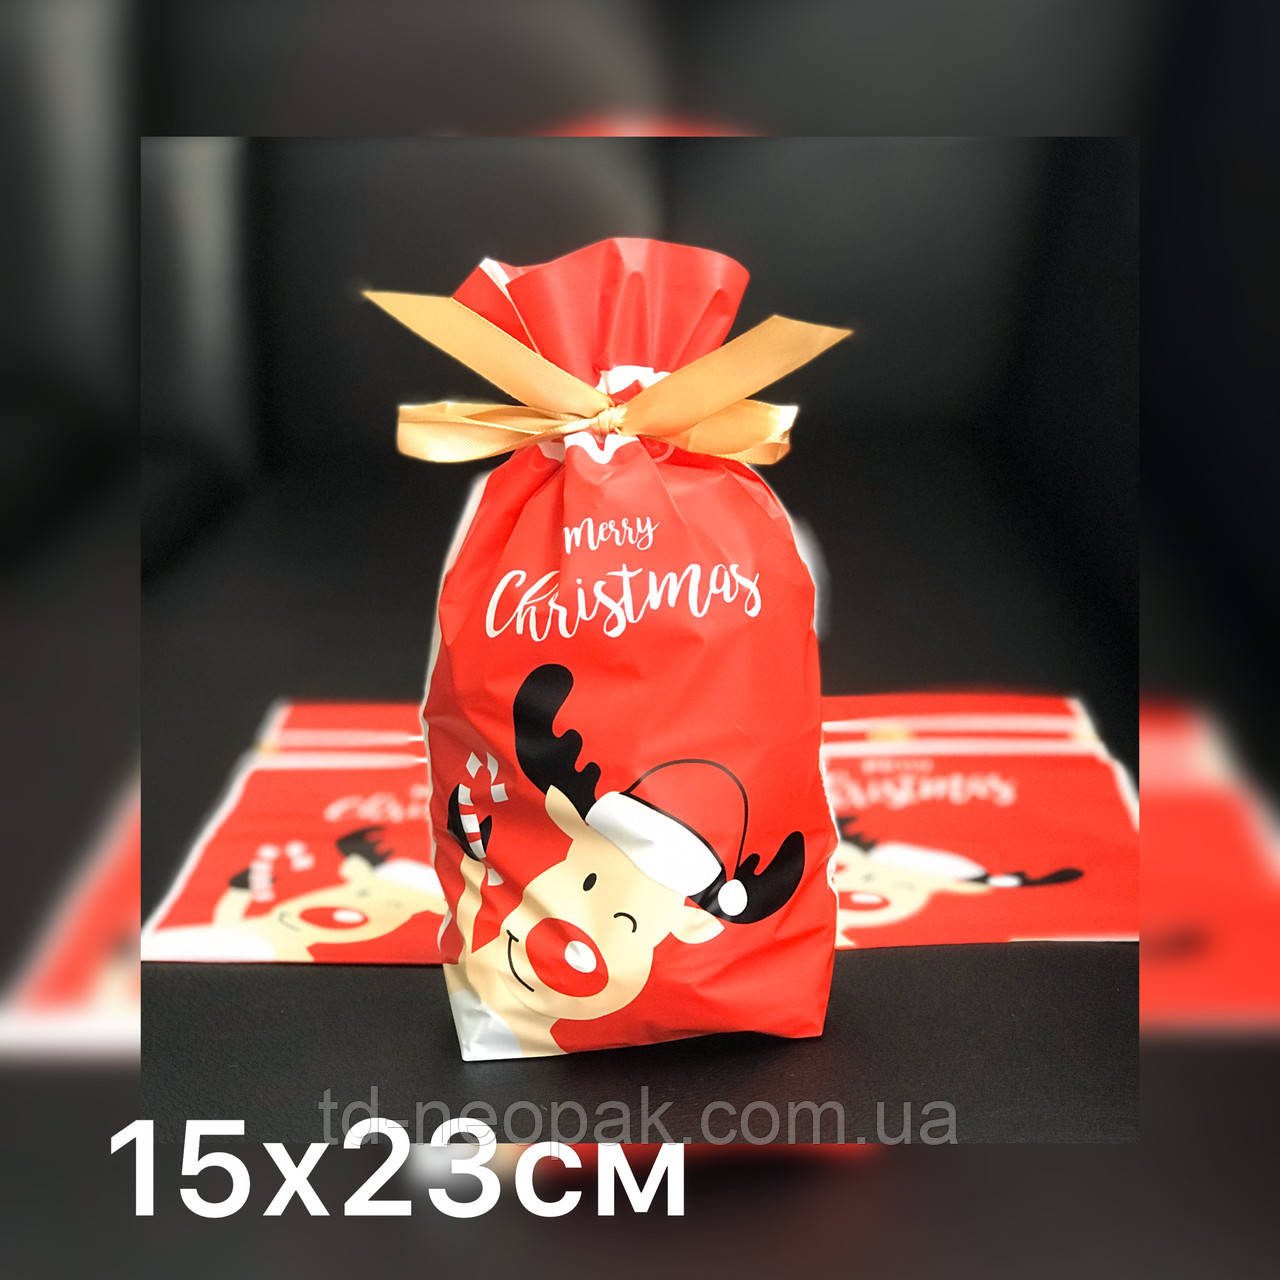 Новорічний пакет для упаковки цукерок, випічки 15х23см